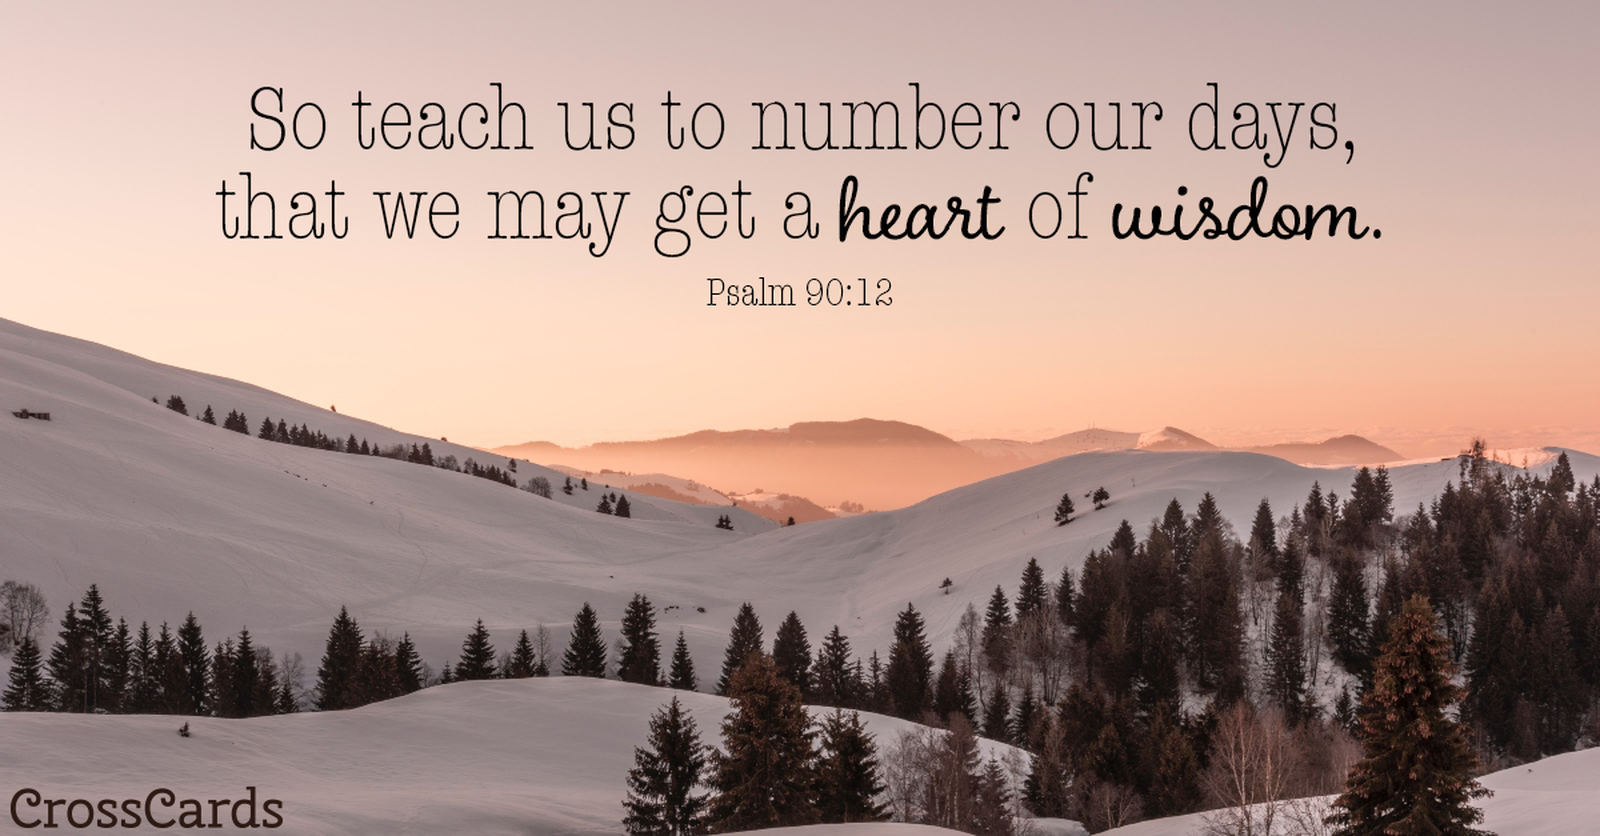 Psalm 90:12 - A Heart of Wisdom